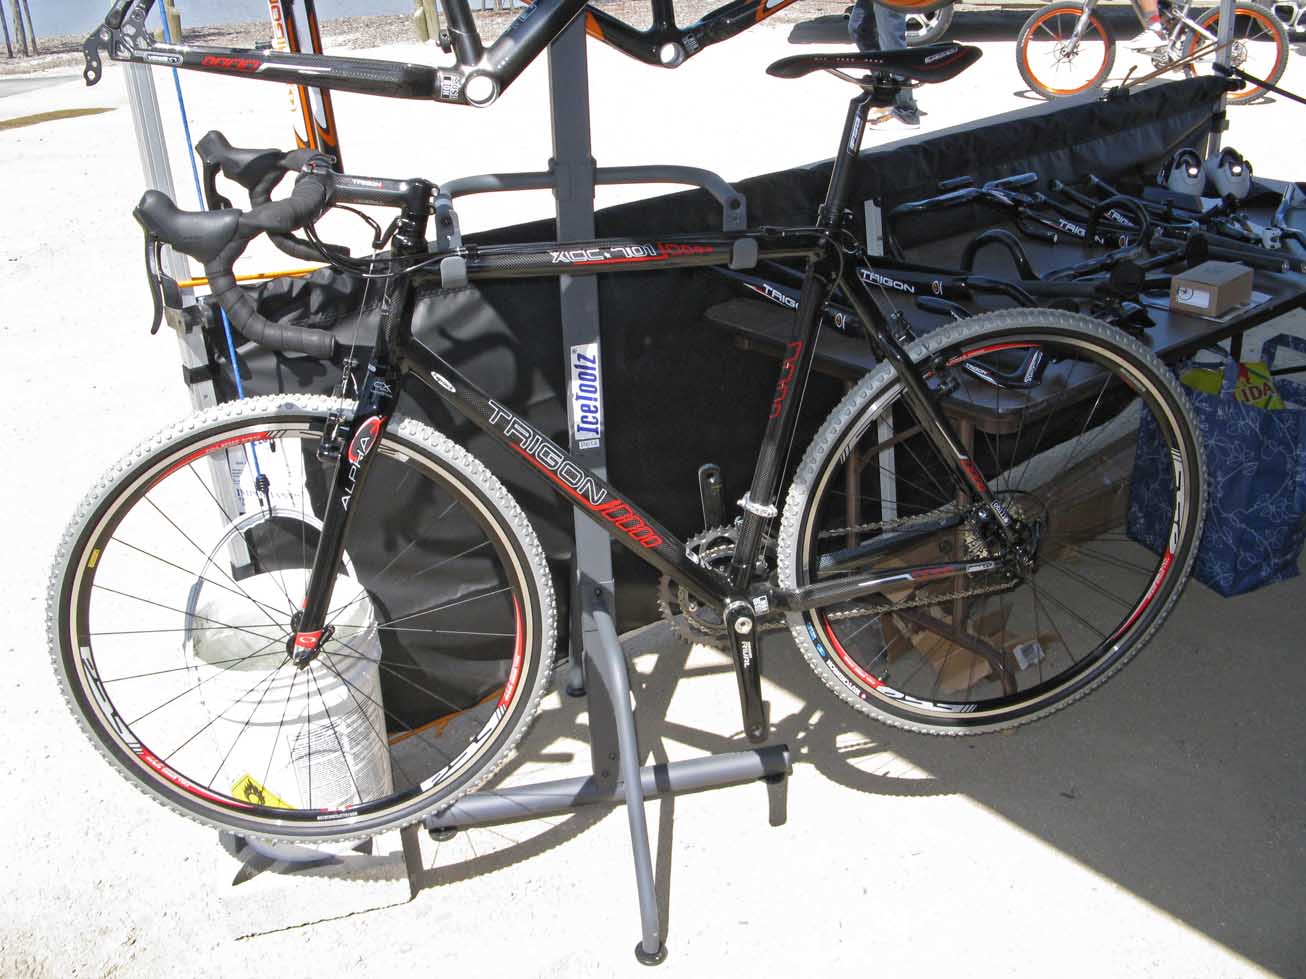 Trigon's XOC-701 carbon cyclocross frame